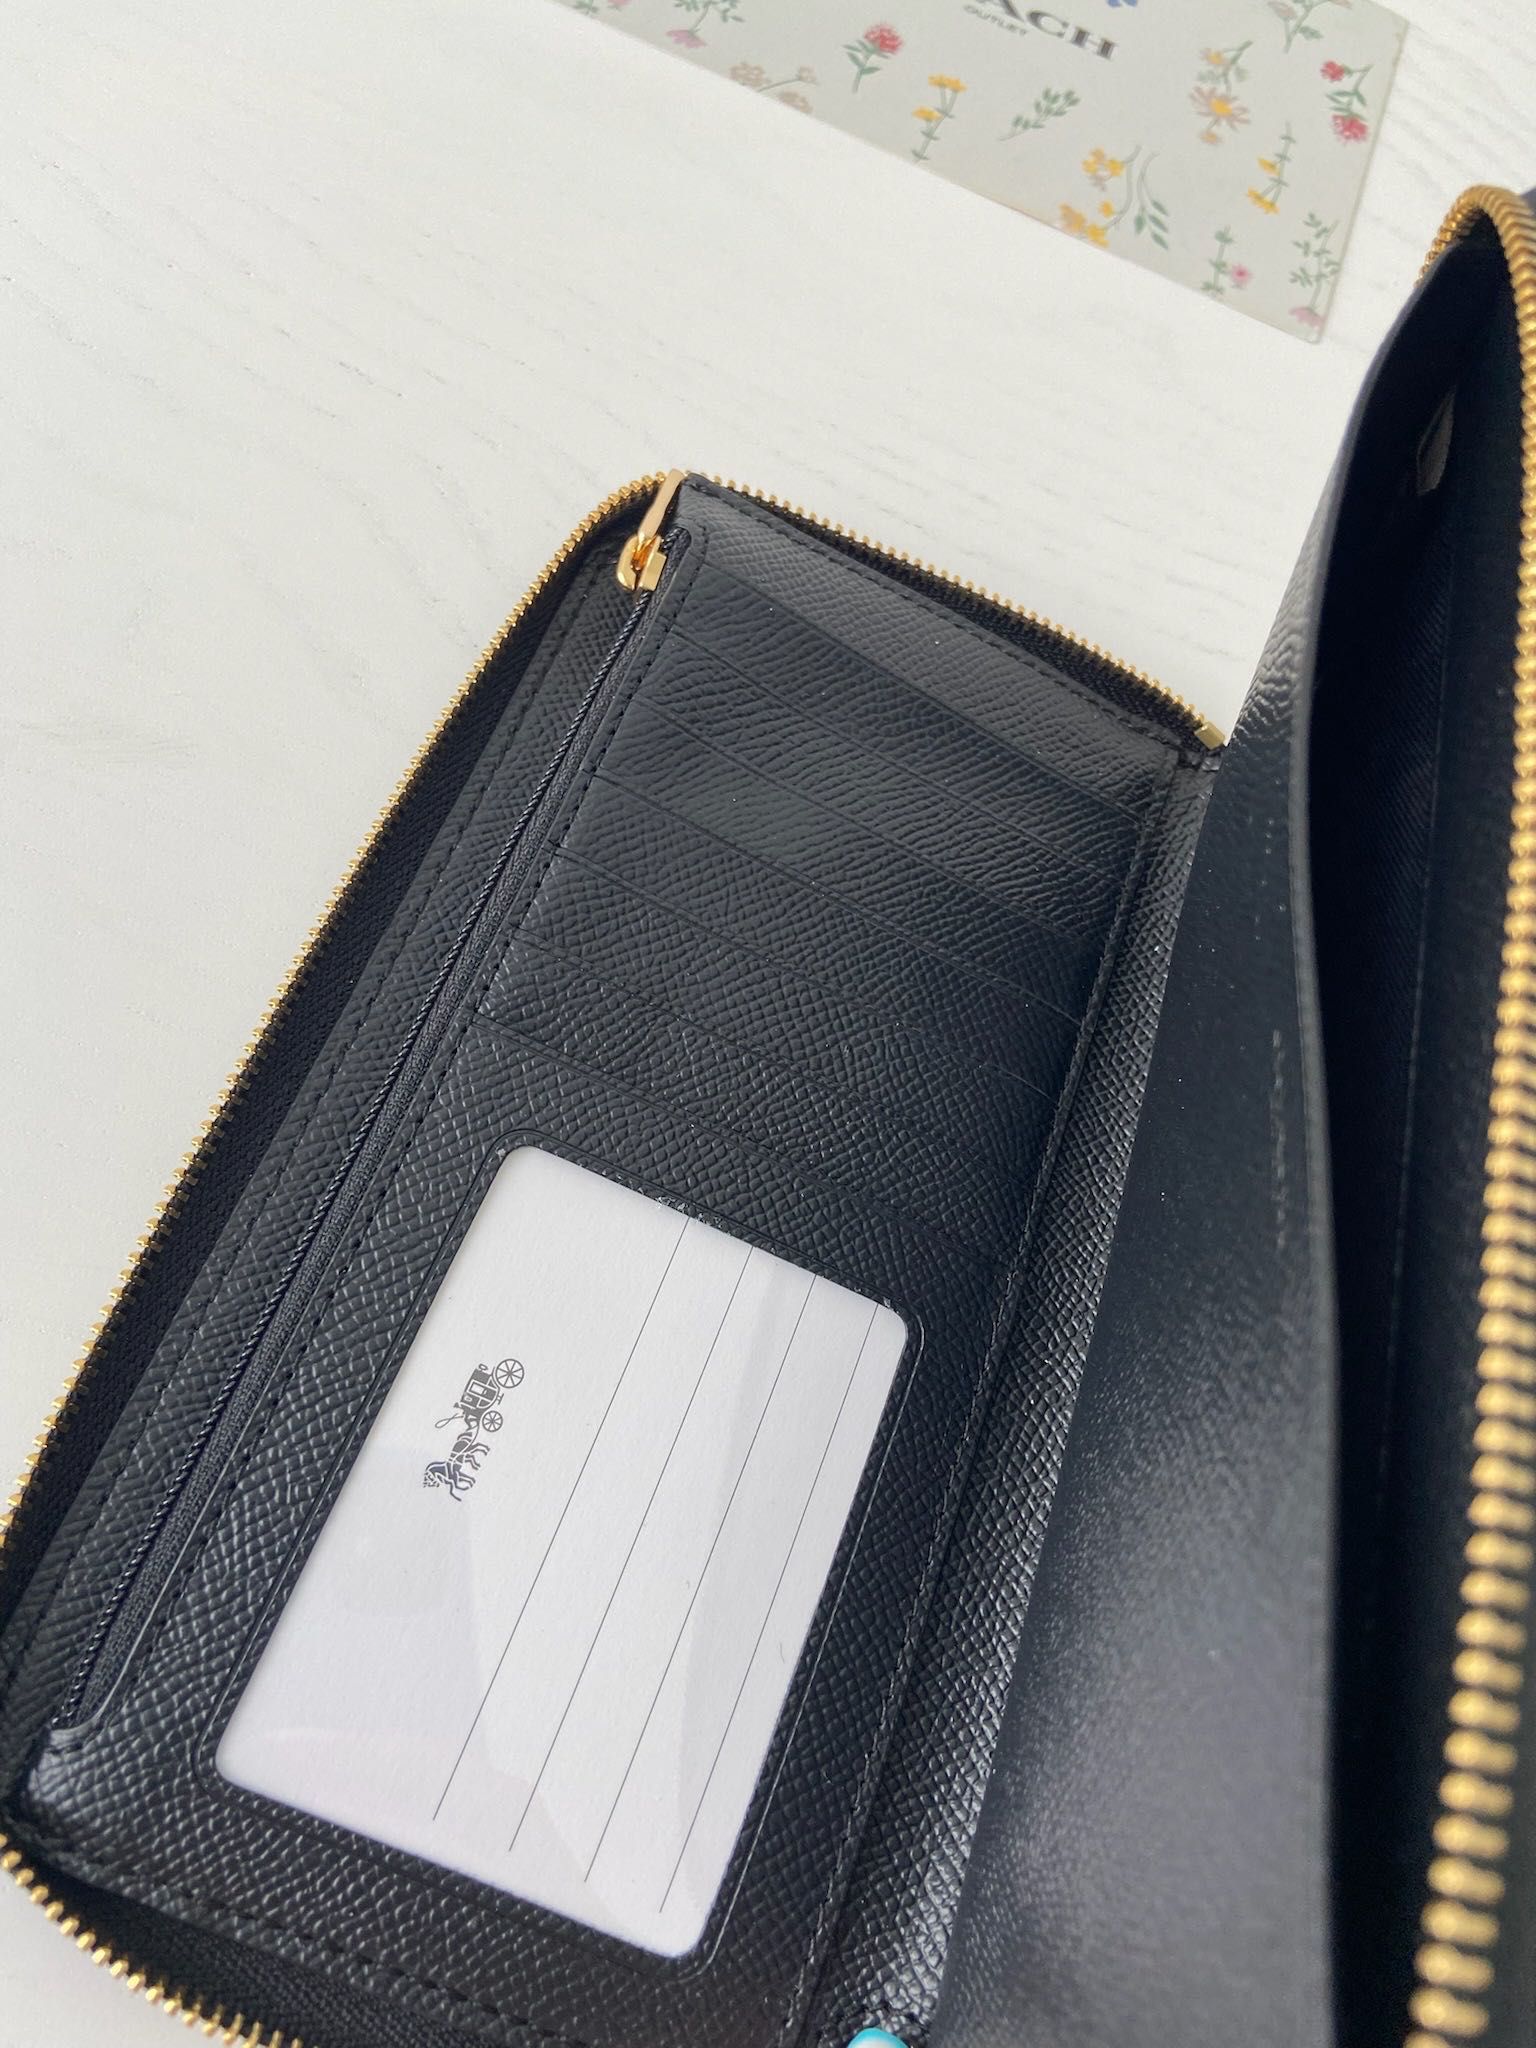 Жіночий гаманець COACH женский кошелек на подарок жене девушке коуч